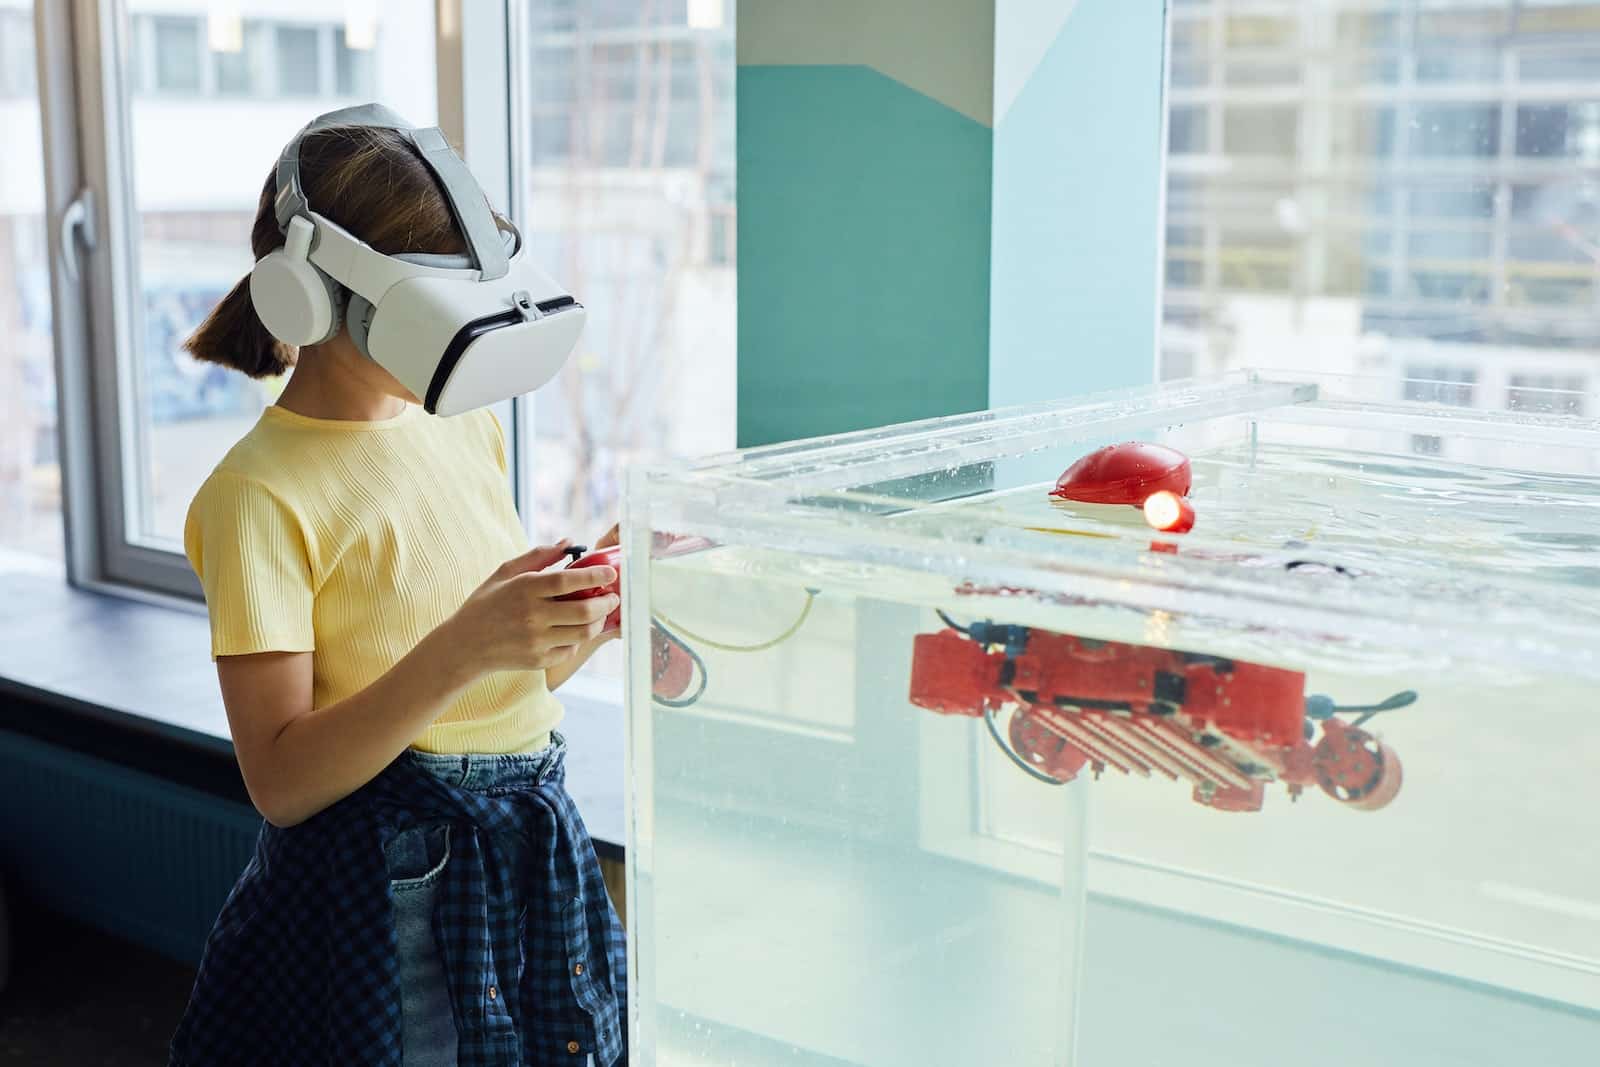 La réalité virtuelle dans le monde scientifique